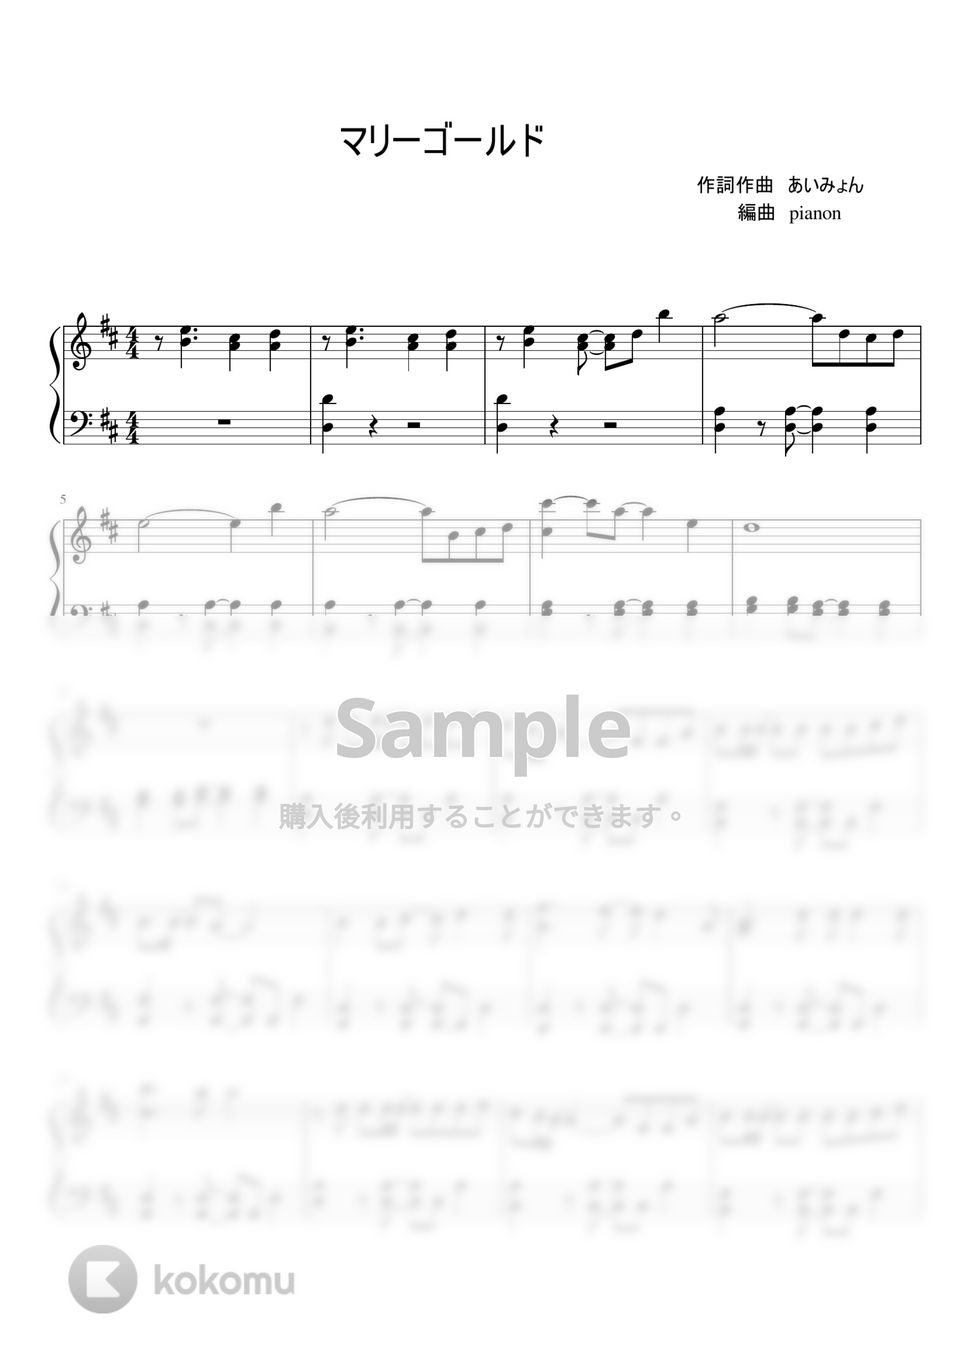 あいみょん - マリーゴールド by pianon楽譜